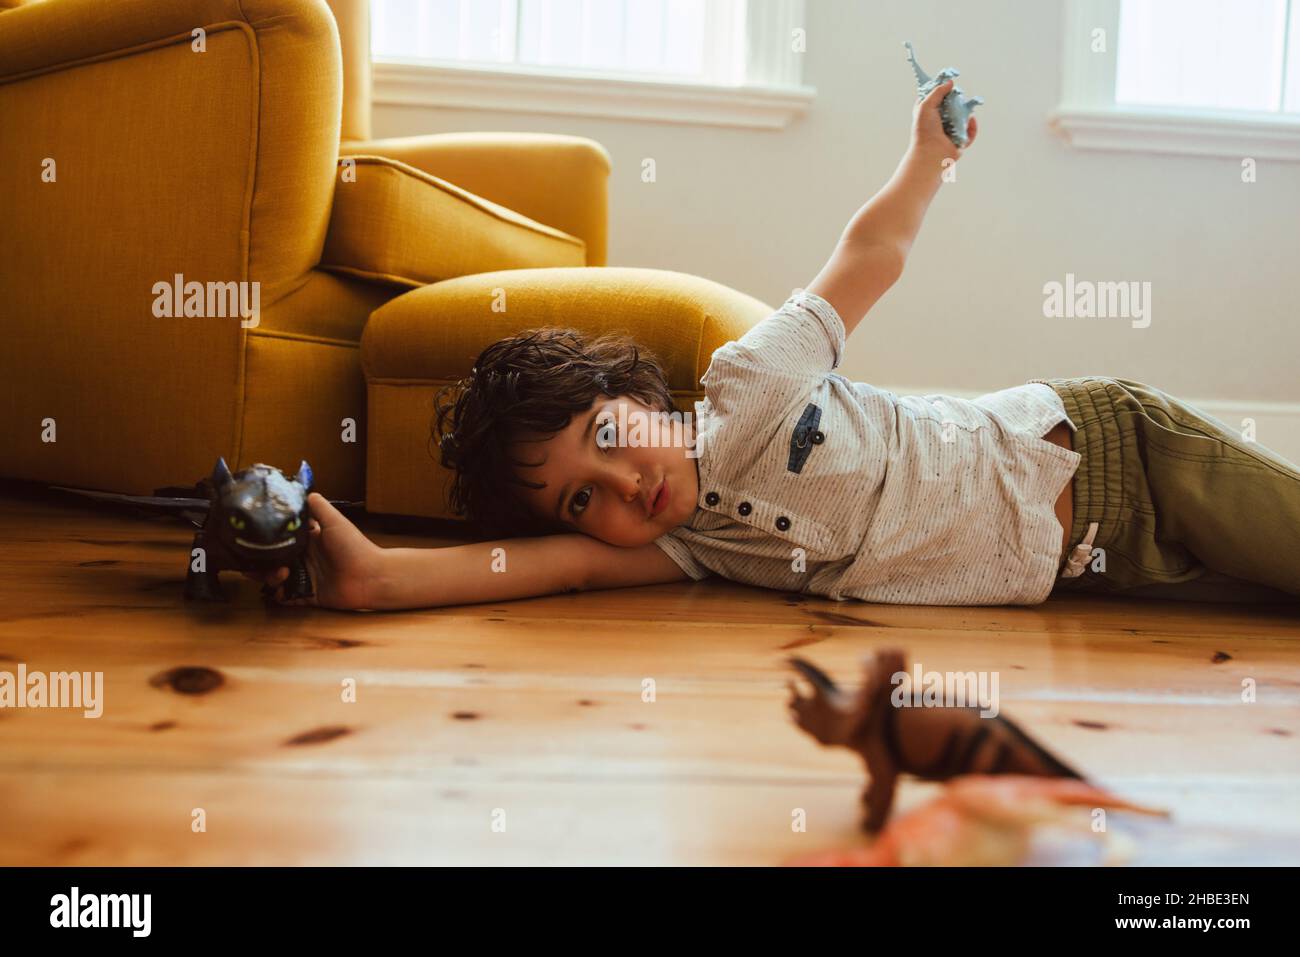 Netter kleiner Junge, der zu Hause mit seinem Spielzeug spielt. Ethnischer Junge, der mit Dinosaurierspielzeug spielt, während er auf dem Boden in seinem Spielbereich liegt. Stockfoto